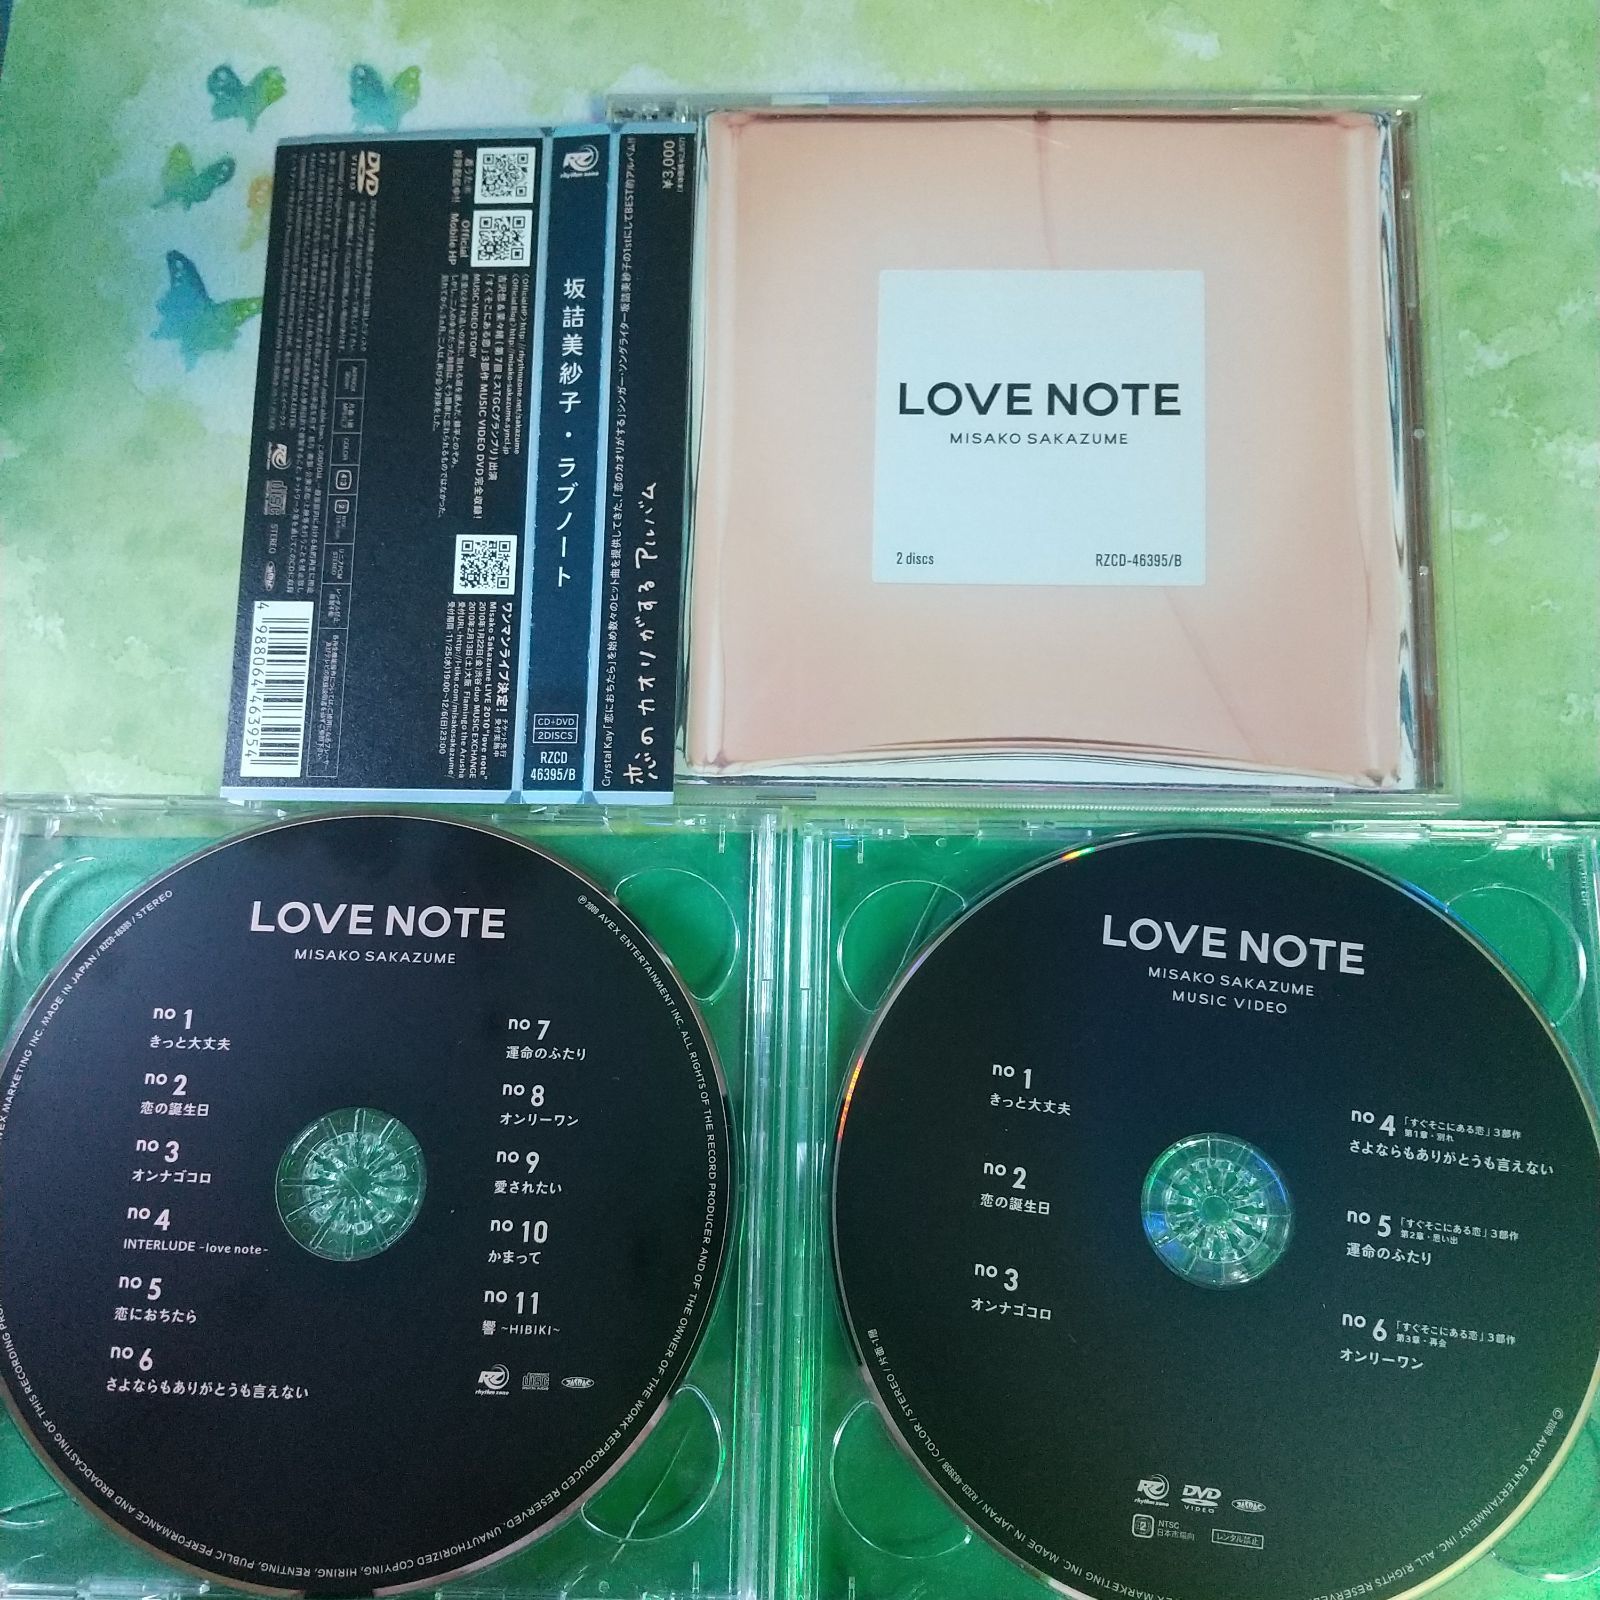 坂詰美紗子❤️『Love note』初回限定盤【CD+DVD】❤️恋したくなる、究極のラブチューン集。